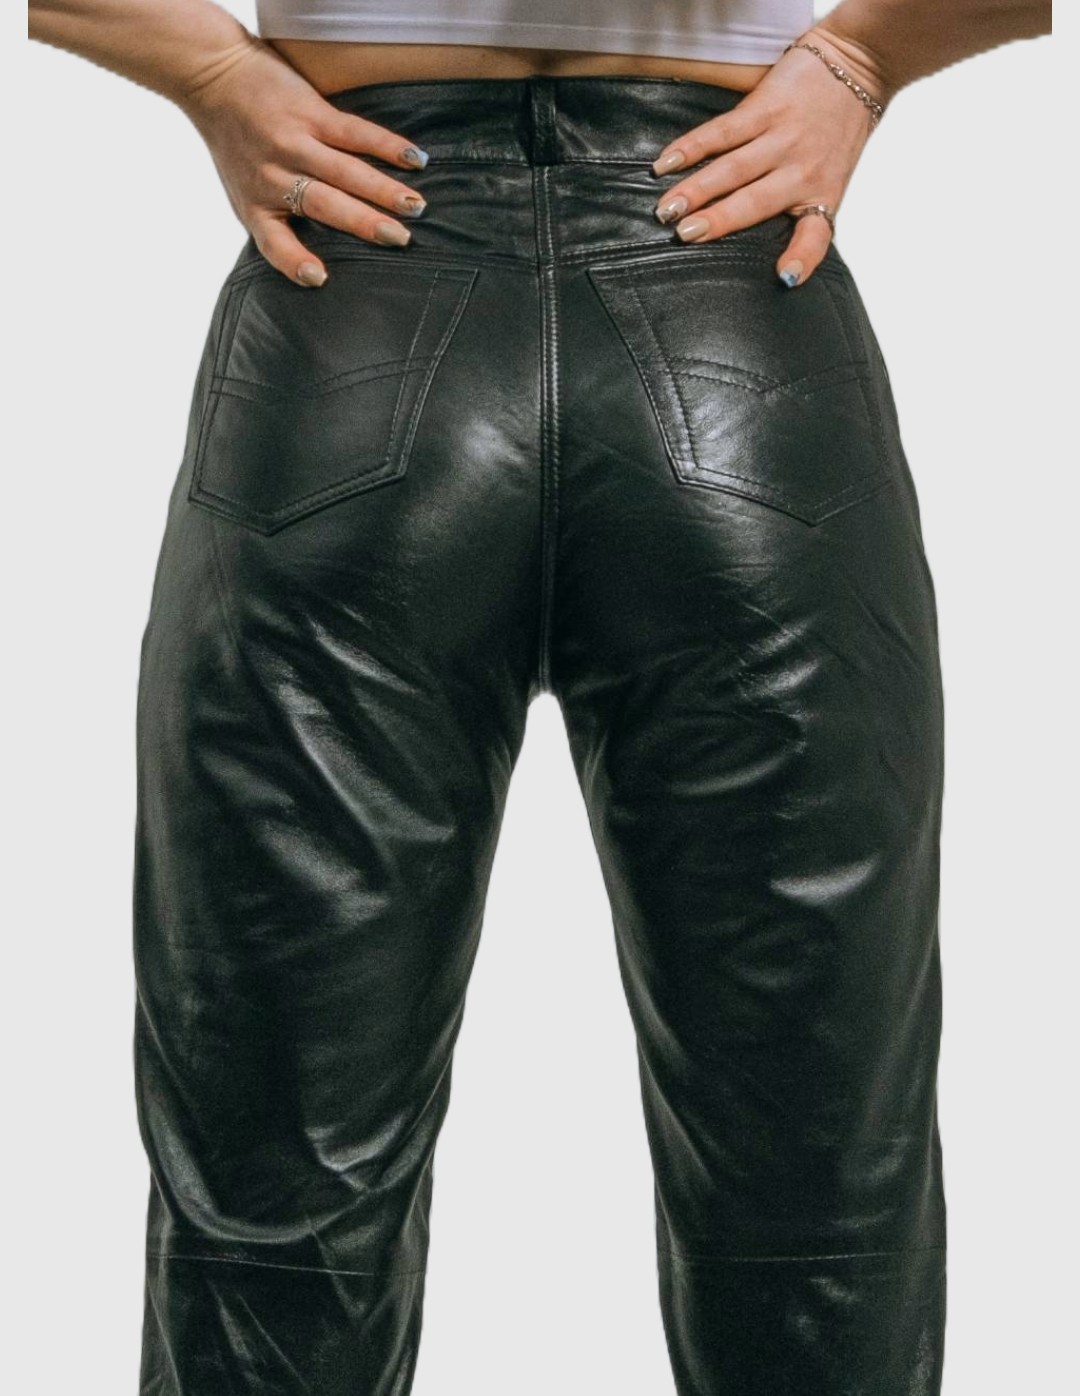 Jean Model 5 Pocket Black Genuine Leather Pants Aster